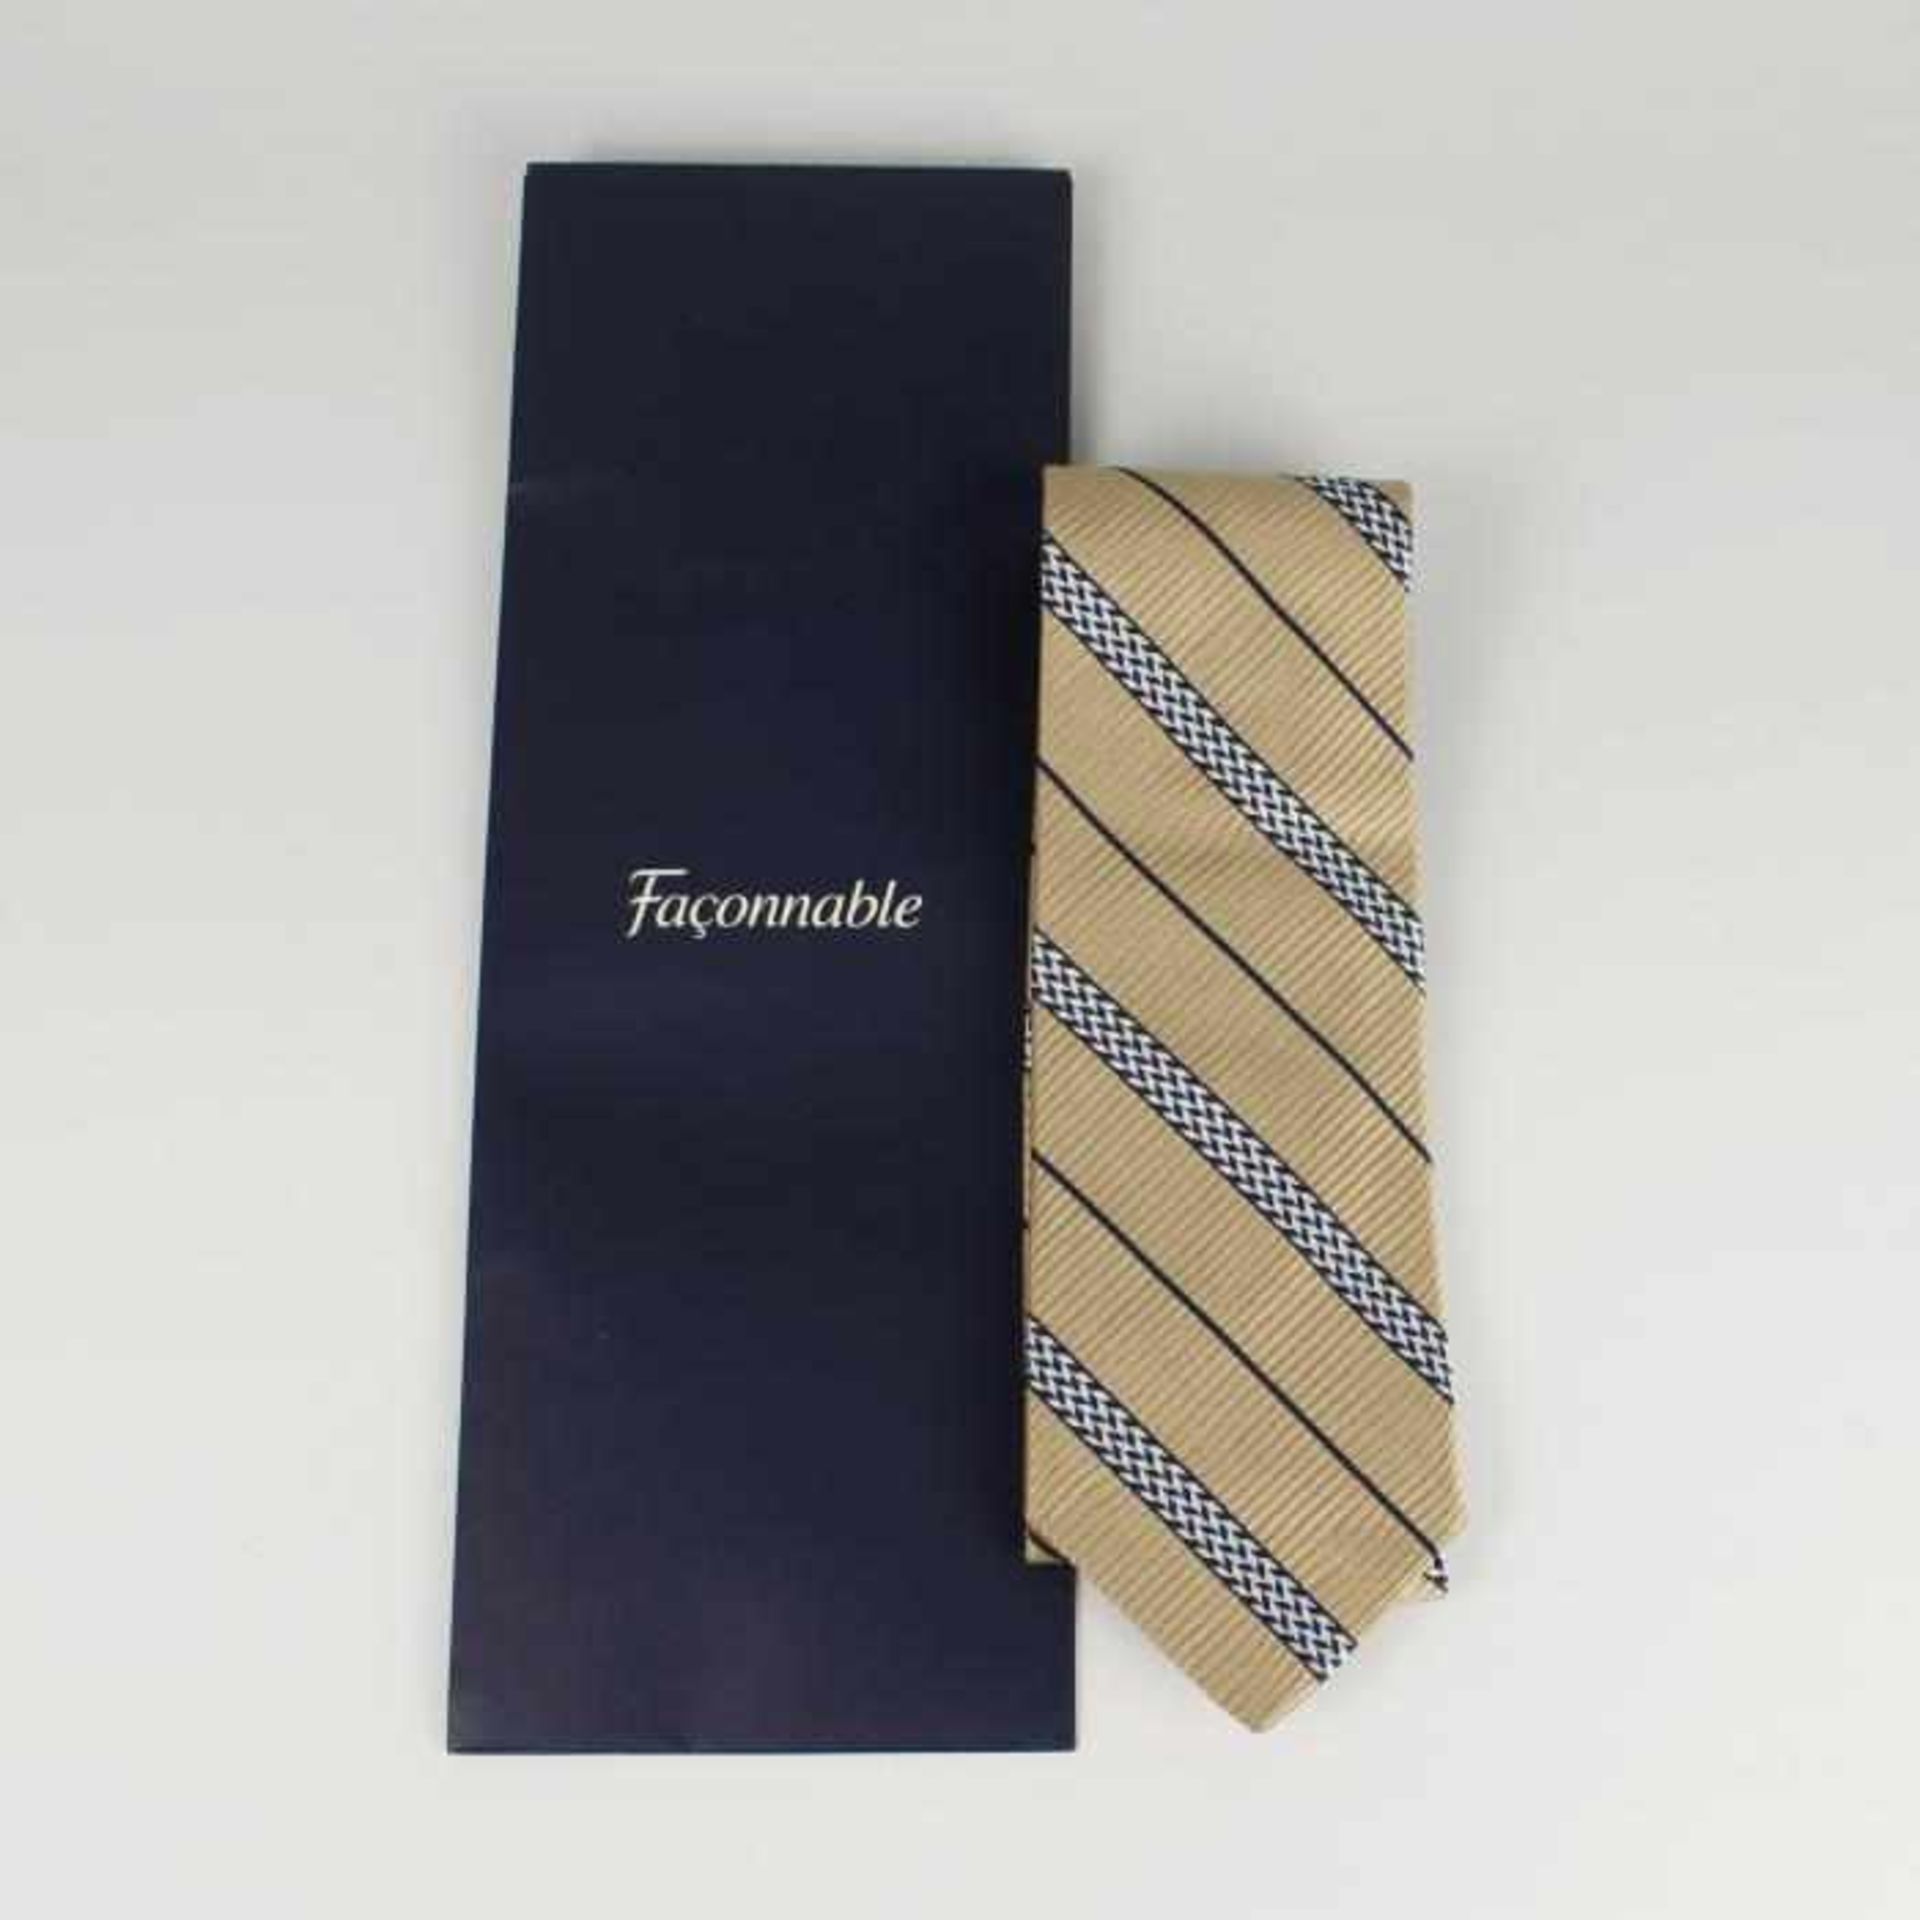 Faconnable - Krawatte 100 % Seide, strukturiertes Streifendessin in gold, silber, blau, neu